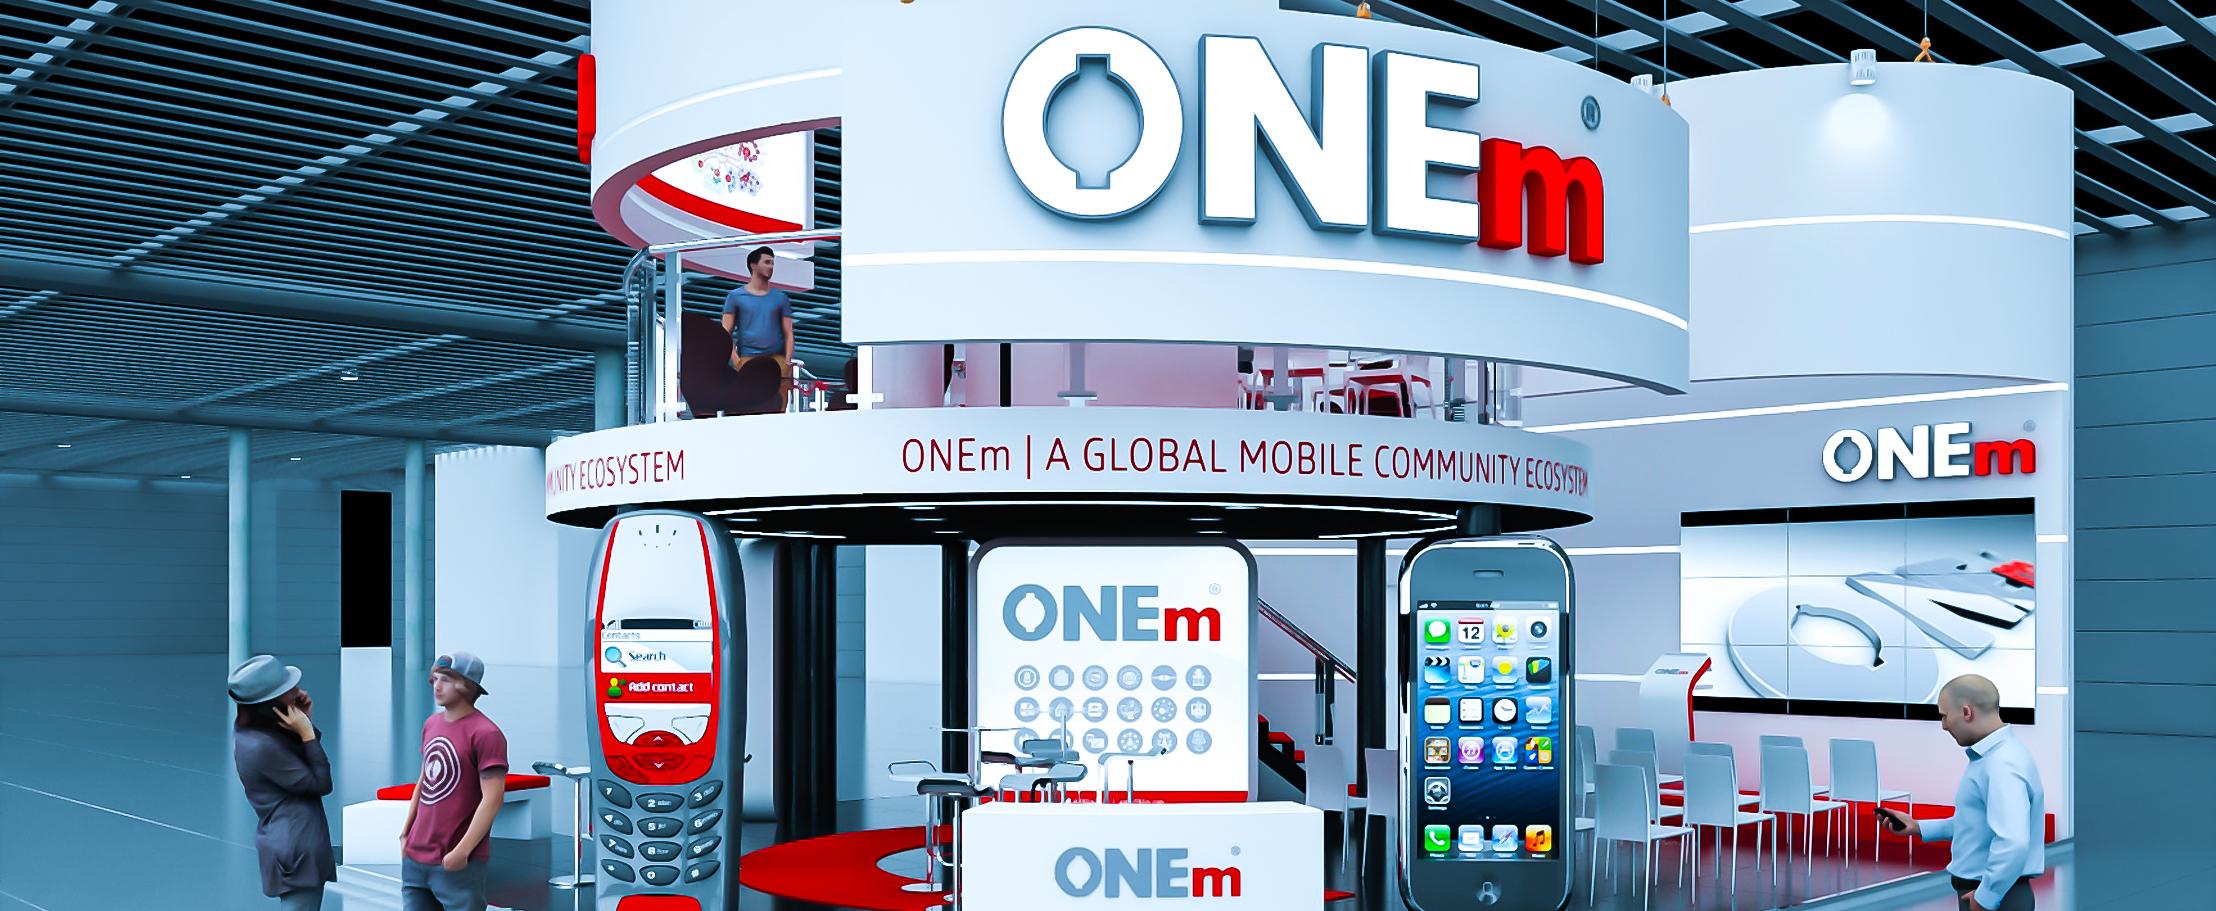 Революционная мобильная услуга от ONEm заработает в ОАЭ